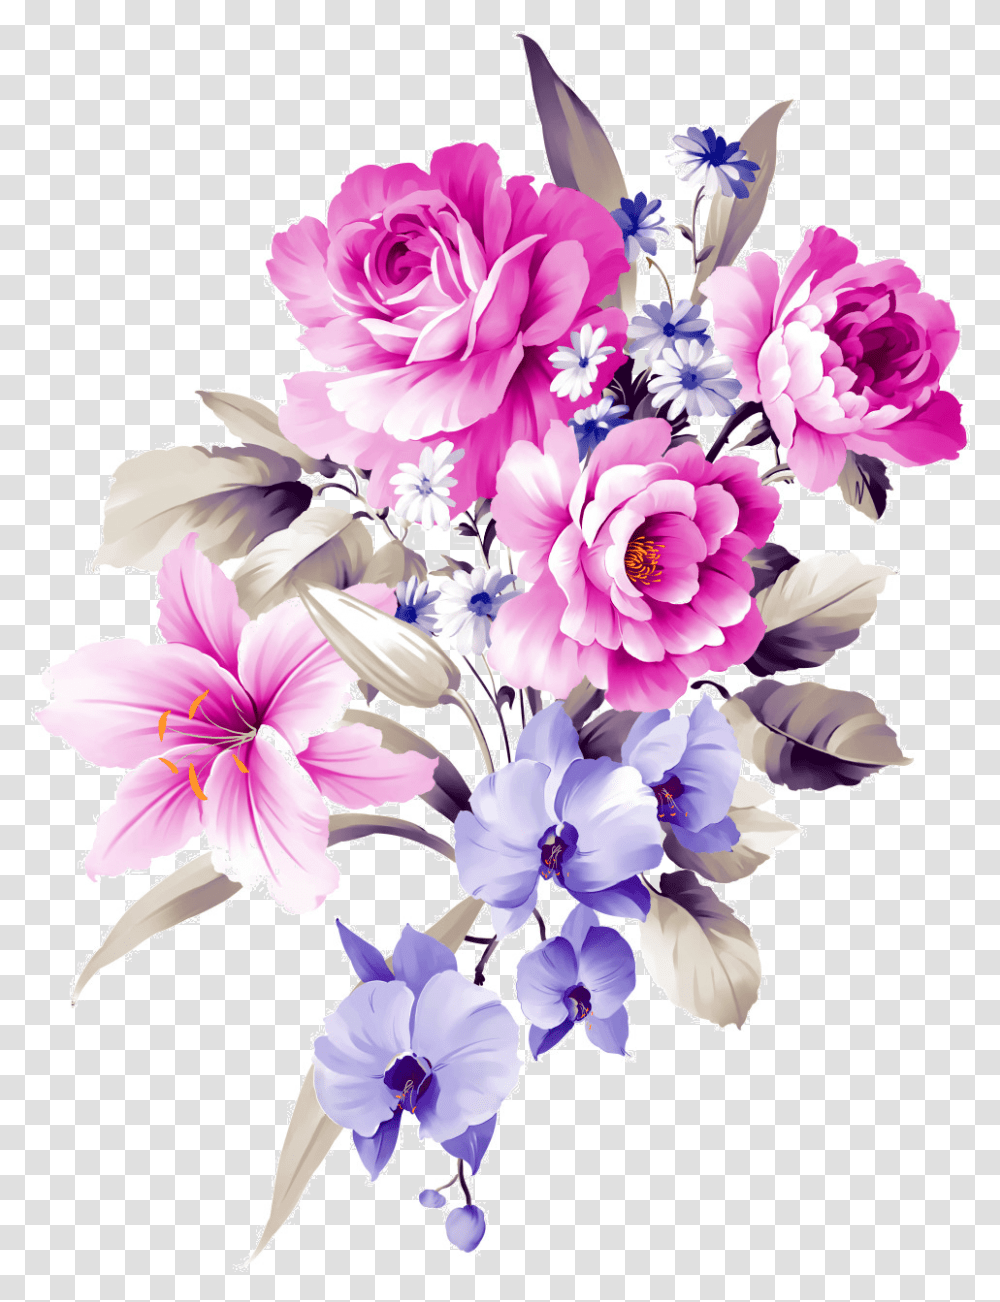 Download Flower Bouquet Shamrock Cut Design Bouquets Floral Flower Bouquets Design, Graphics, Art, Floral Design, Pattern Transparent Png